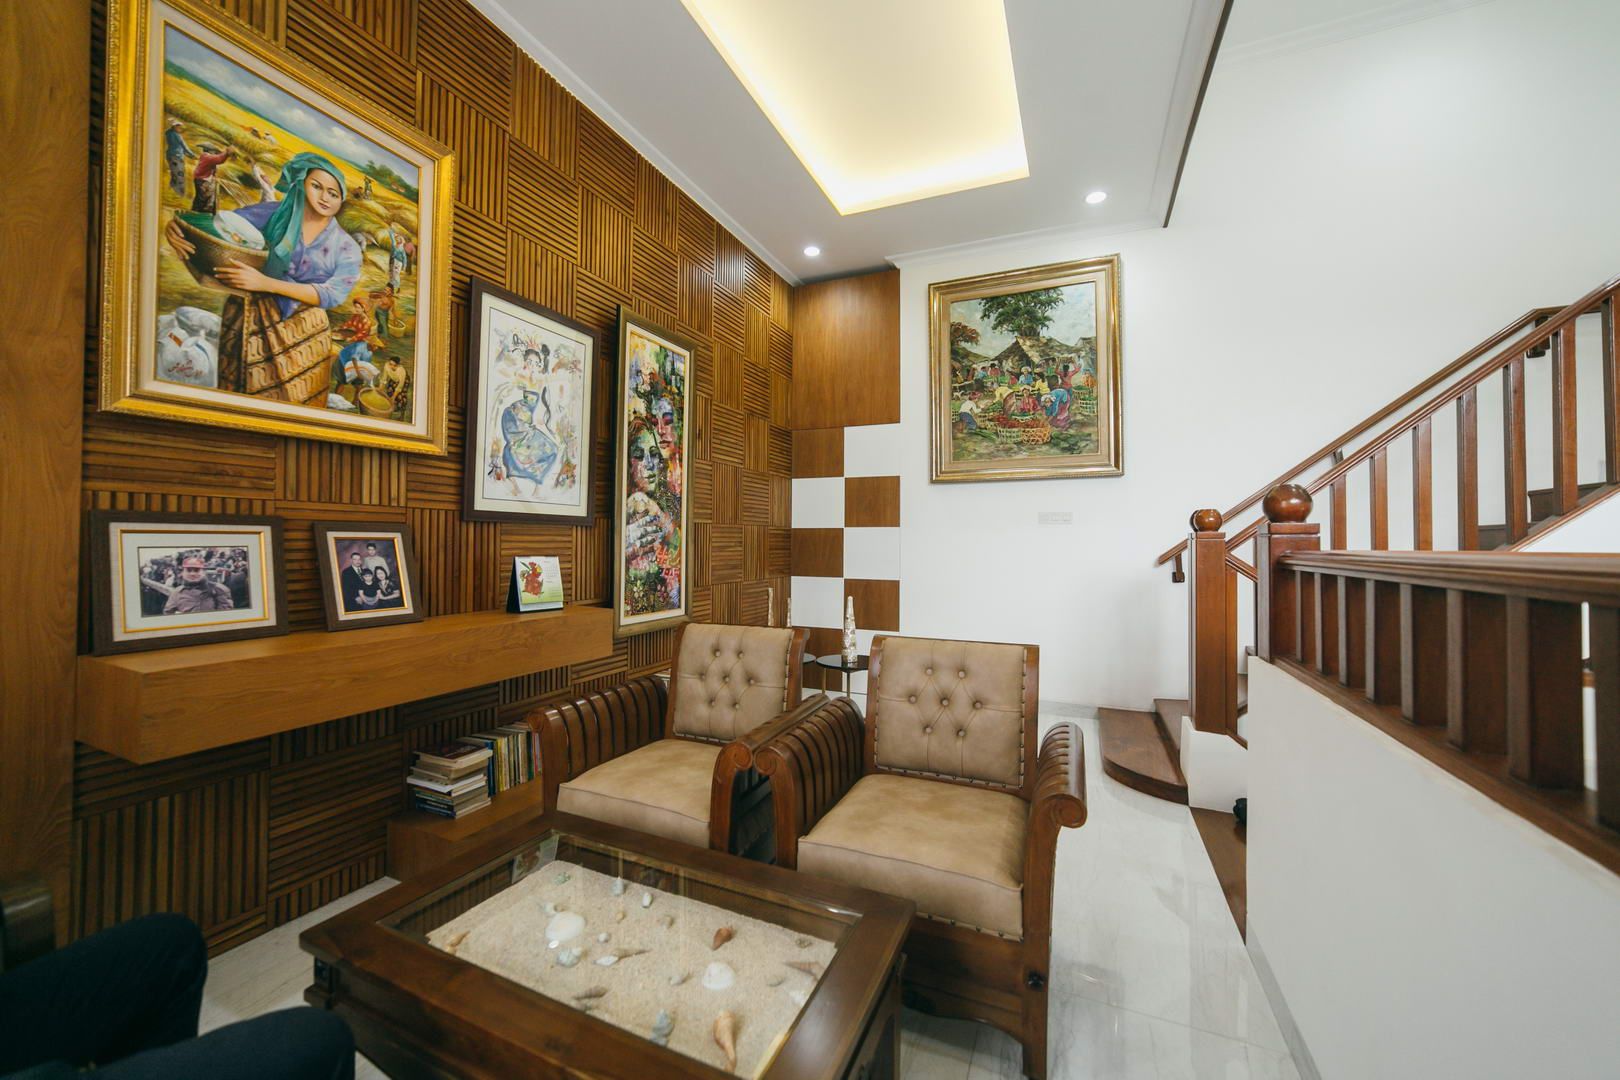 Project Renovasi Rumah 2 Lantai Style Tropical modern, Studio JAJ Studio JAJ Salones tropicales